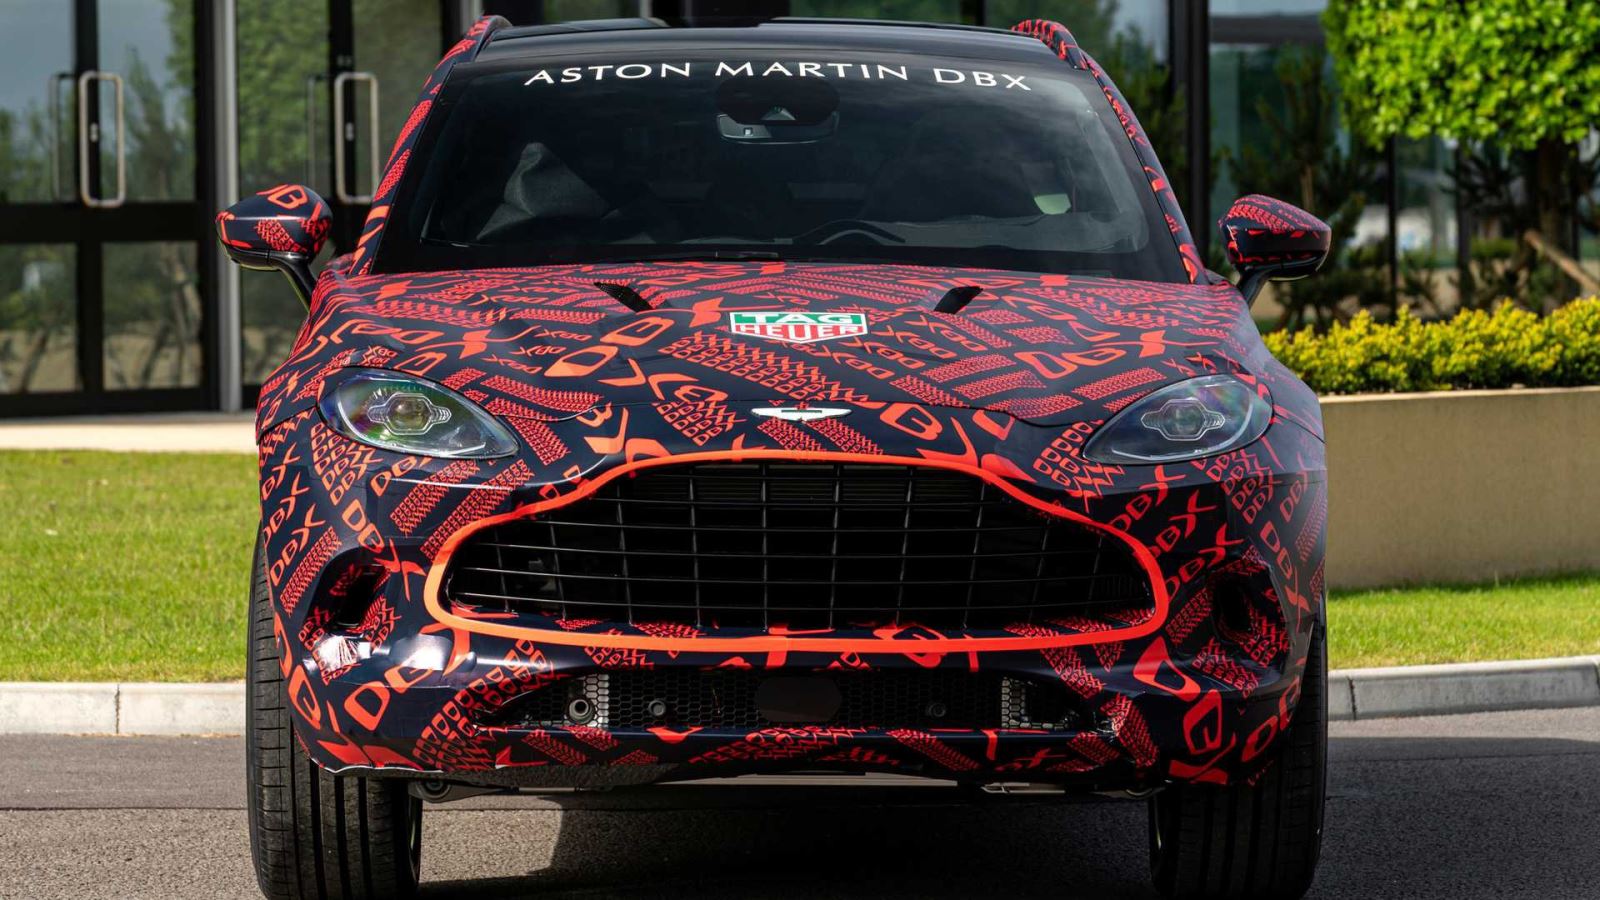 SUV siêu sang của Aston Martin có thể đi kèm chế độ lái drift 2